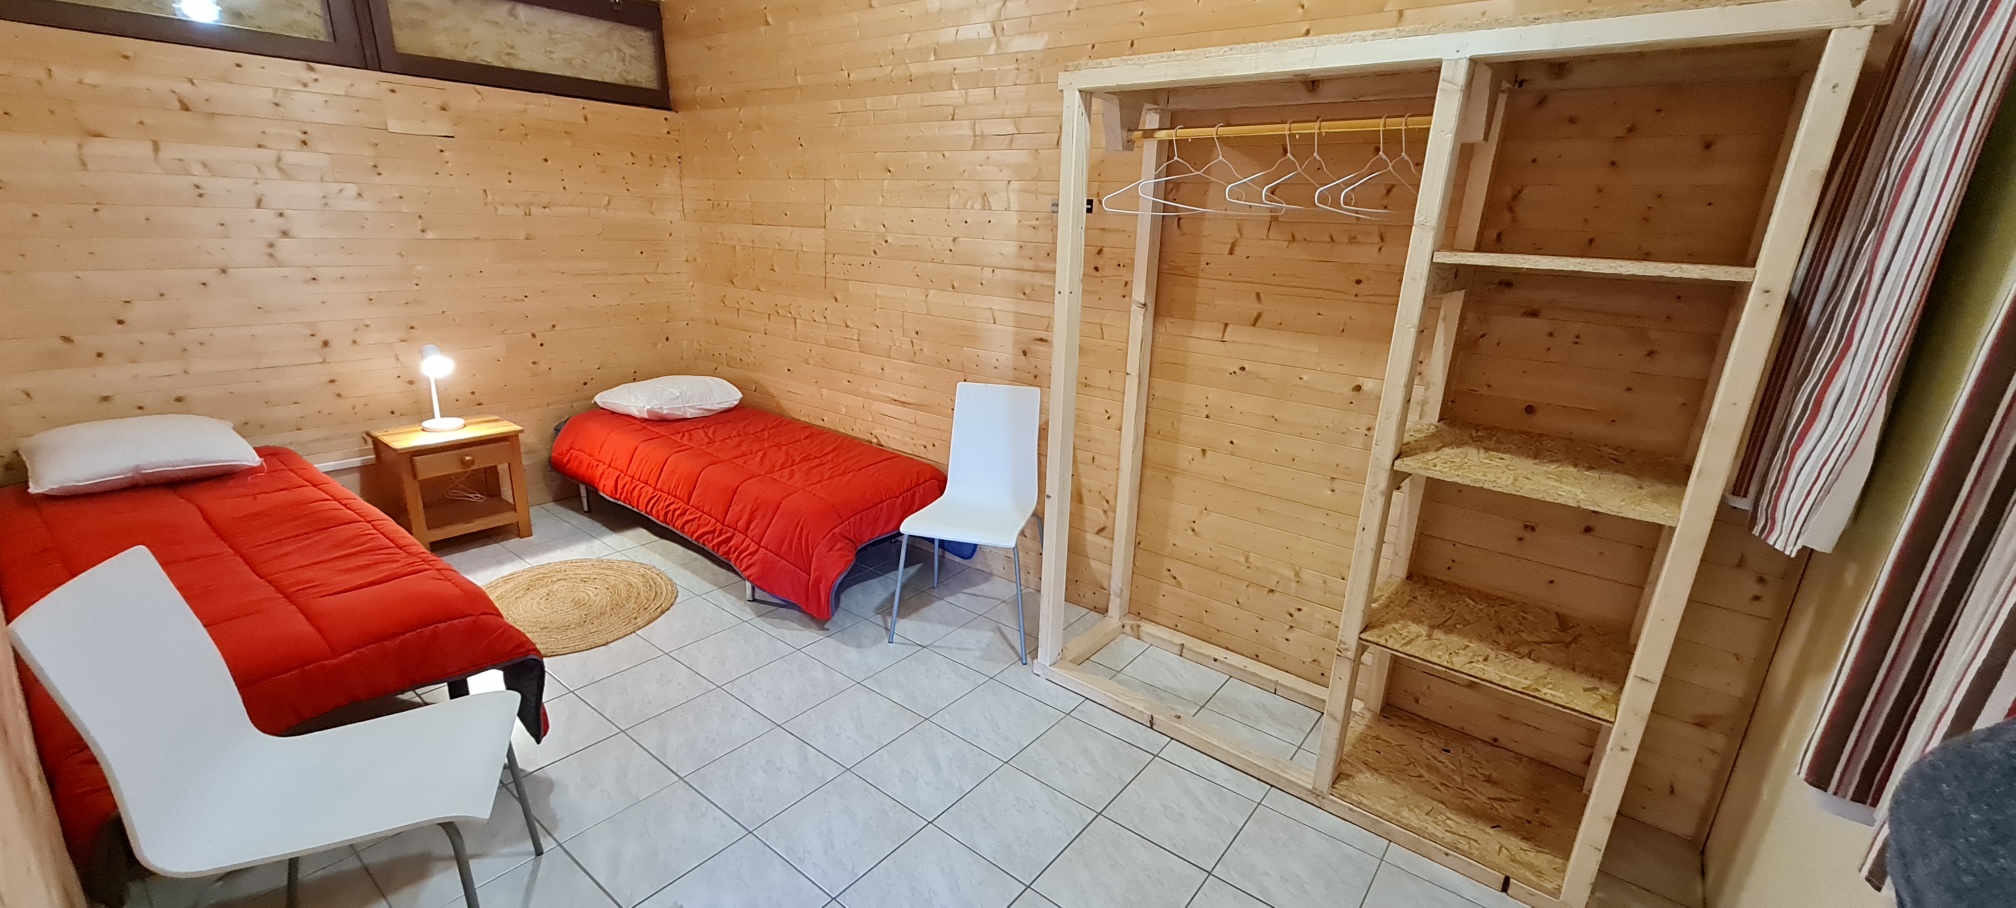 Kamer - Kamer Nr. 401-2/Overnachting Voor Wandelaars: 2 Eenpersoonsbedden. 15U/10U - Camping Pré Rolland